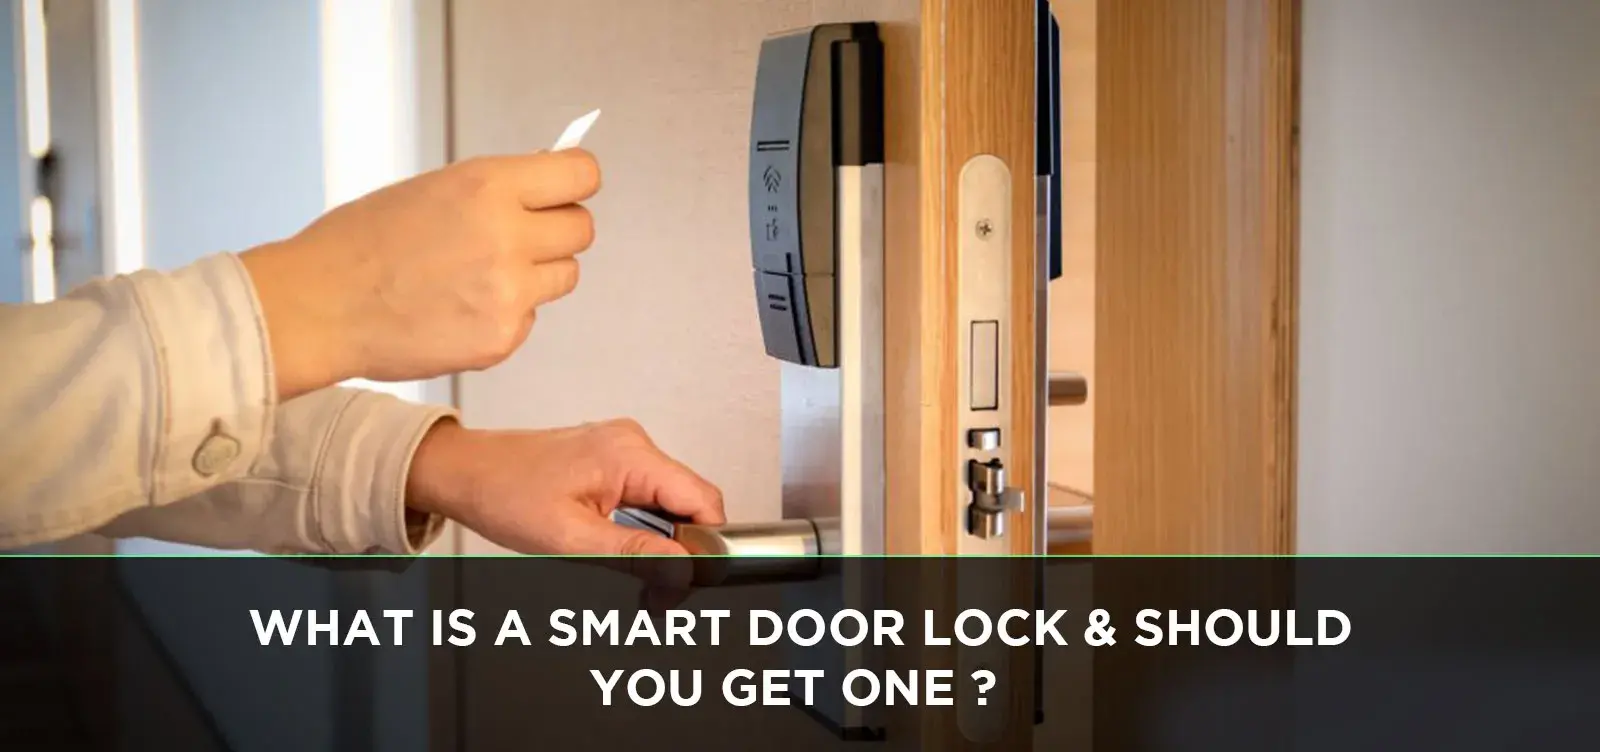 What is a Smart Door Lock & Should You Get One?